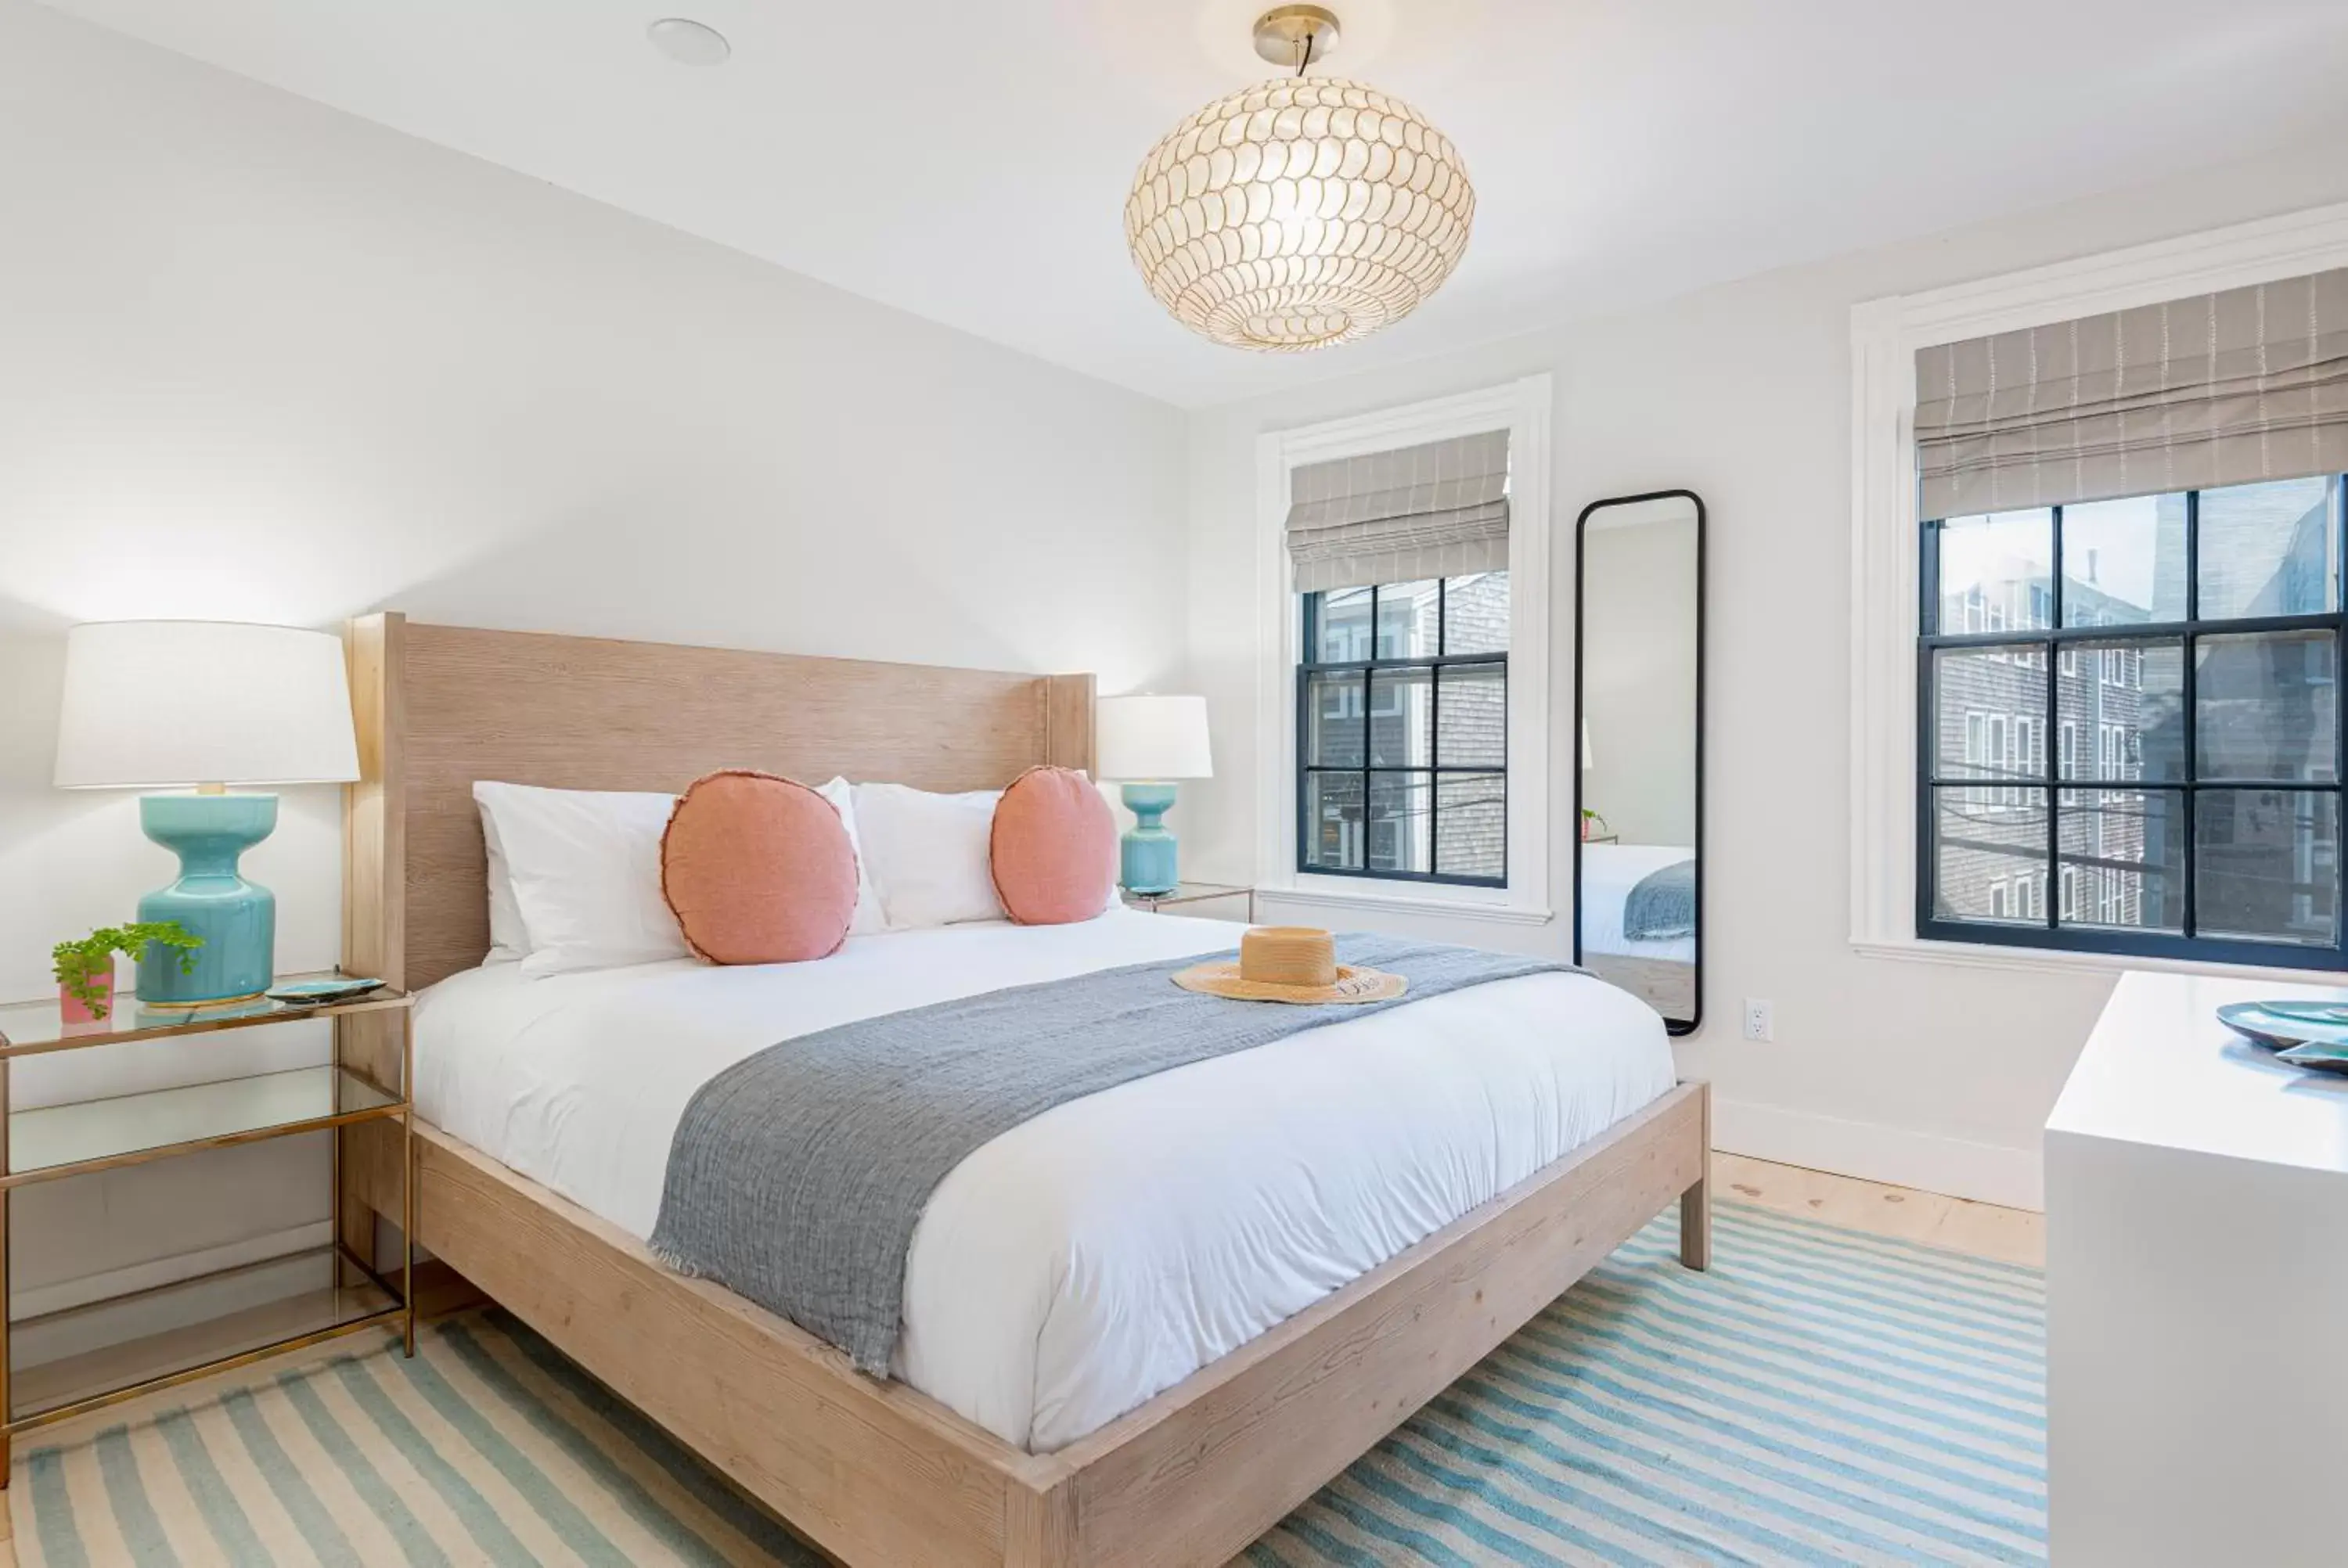 Bedroom, Bed in Nantucket Resort Collection